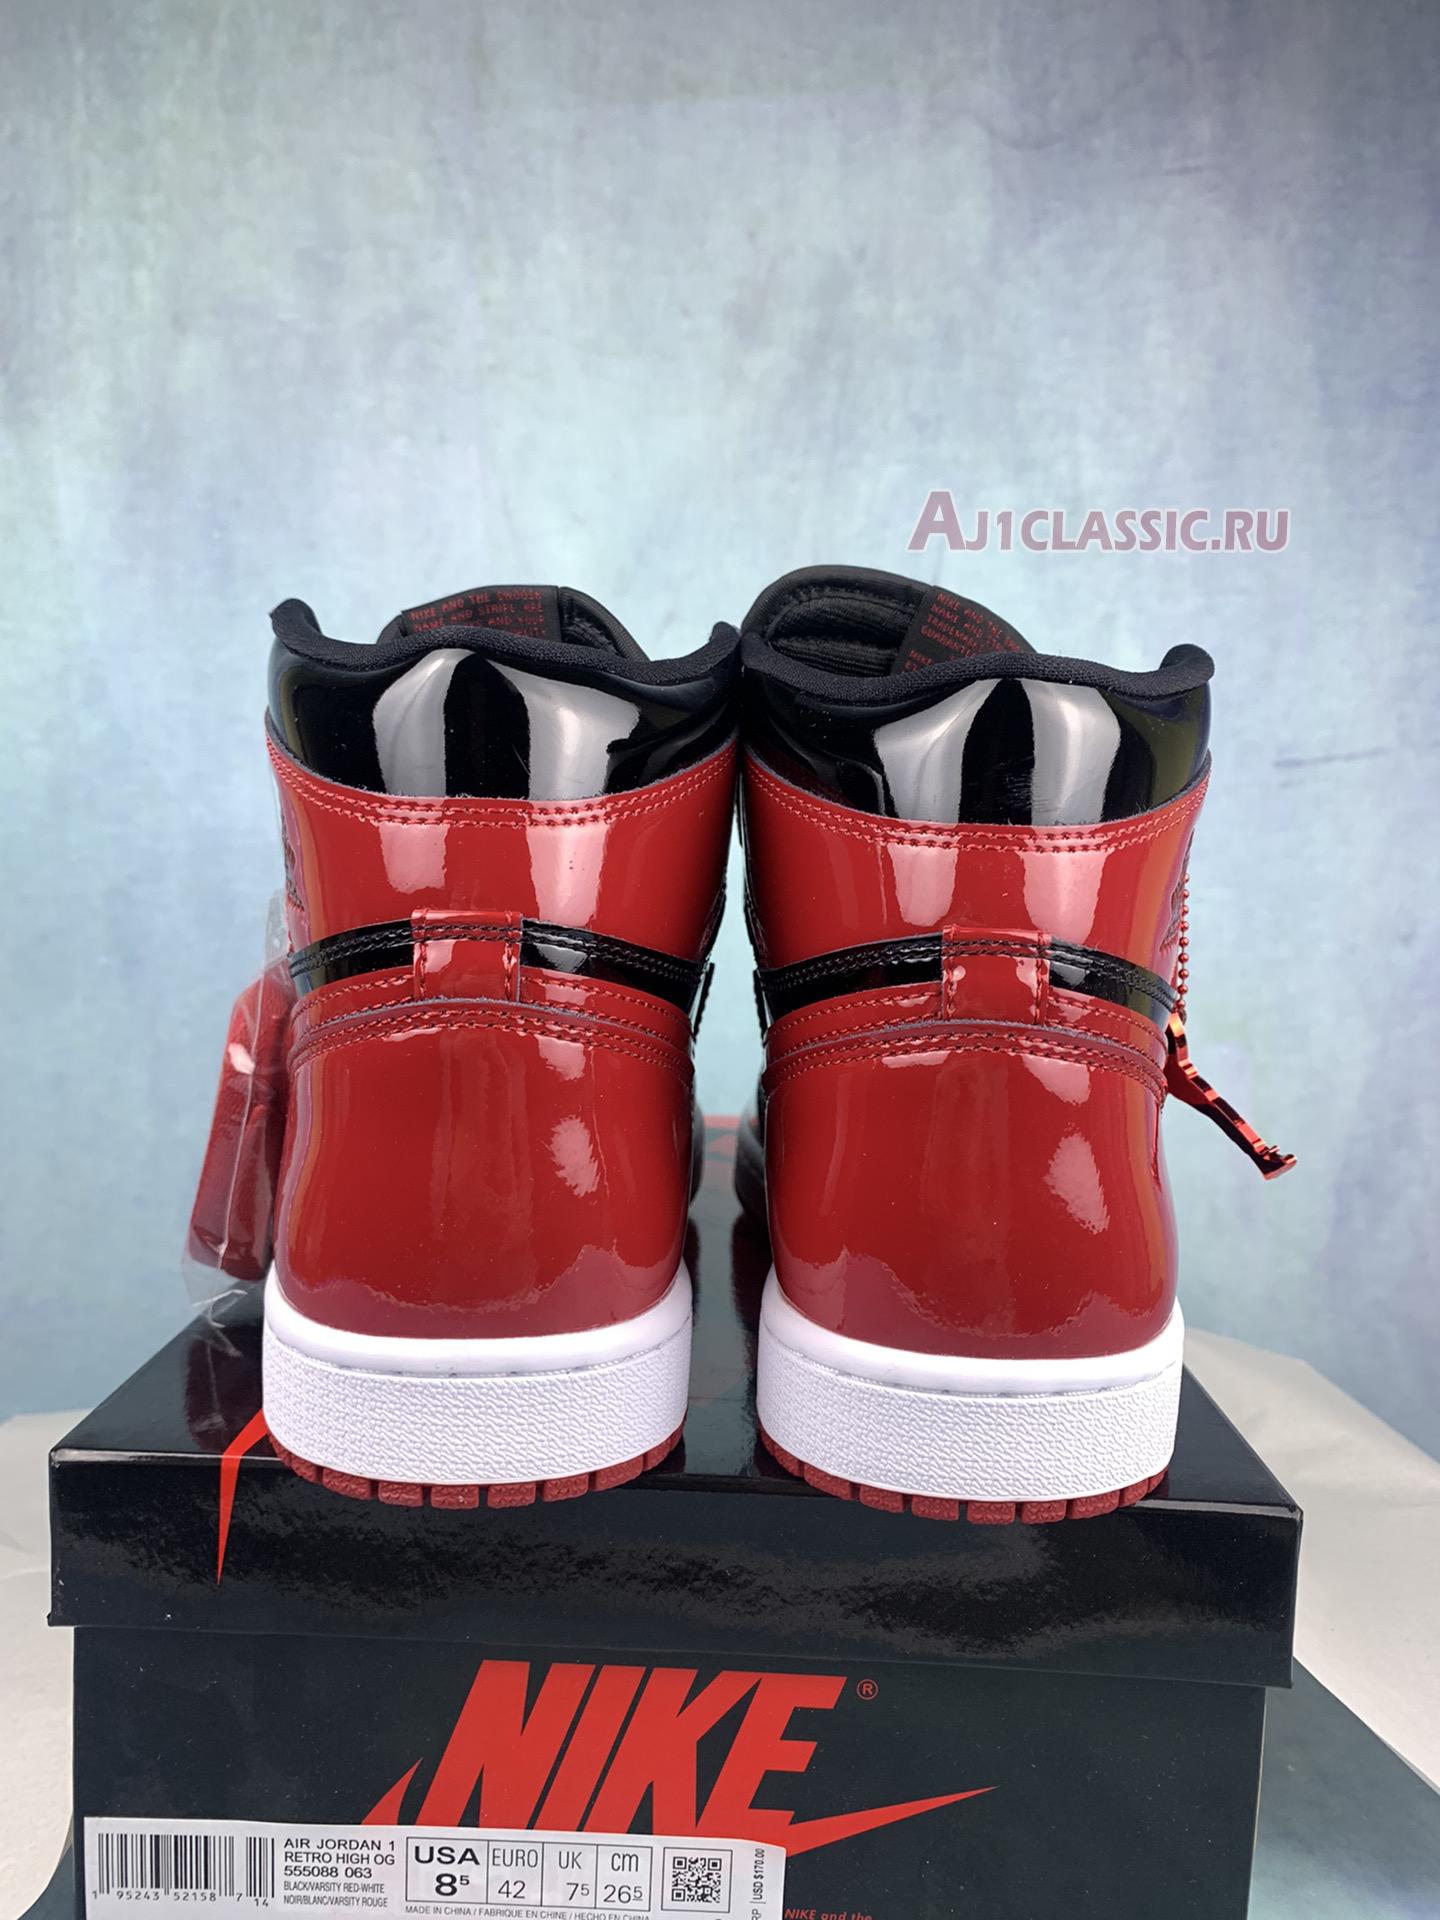 Air Jordan 1 Retro High OG "Patent Bred" 555088-063-2